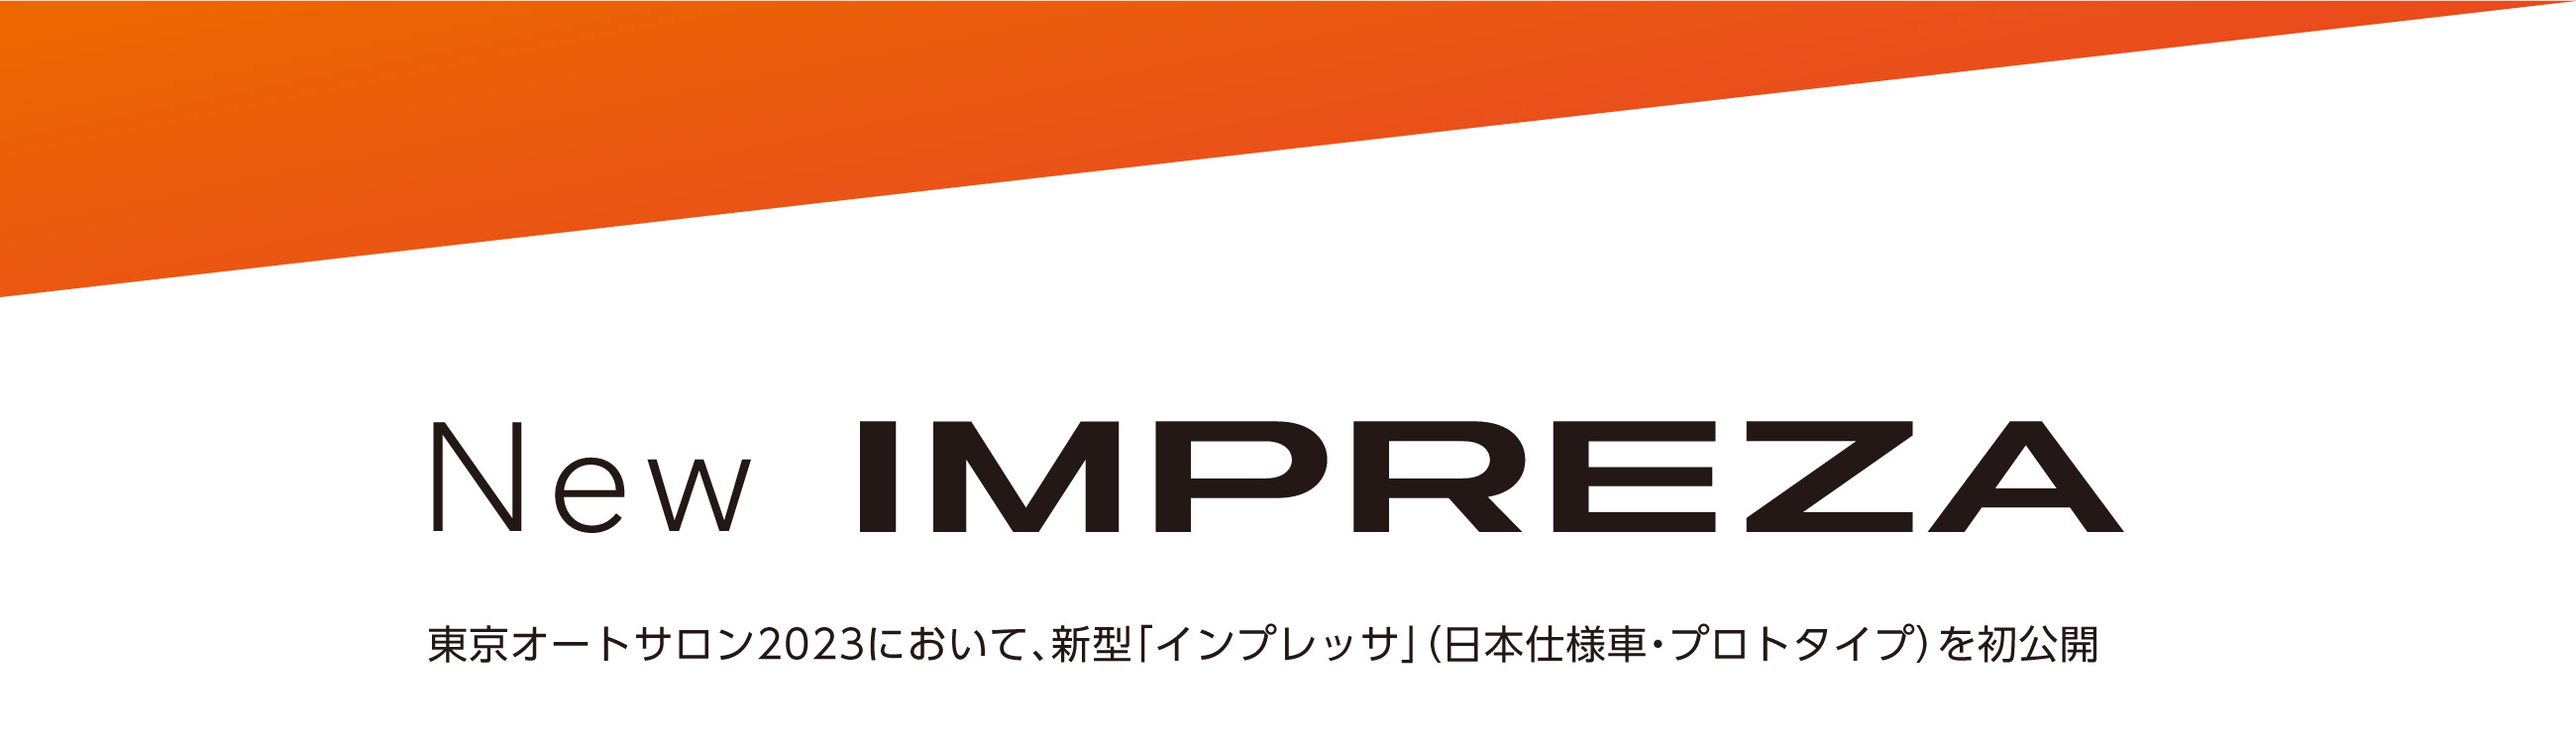 New IMPREZA　東京オートサロン2023において、新型「インプレッサ」（日本仕様車・プロトタイプ）を初公開